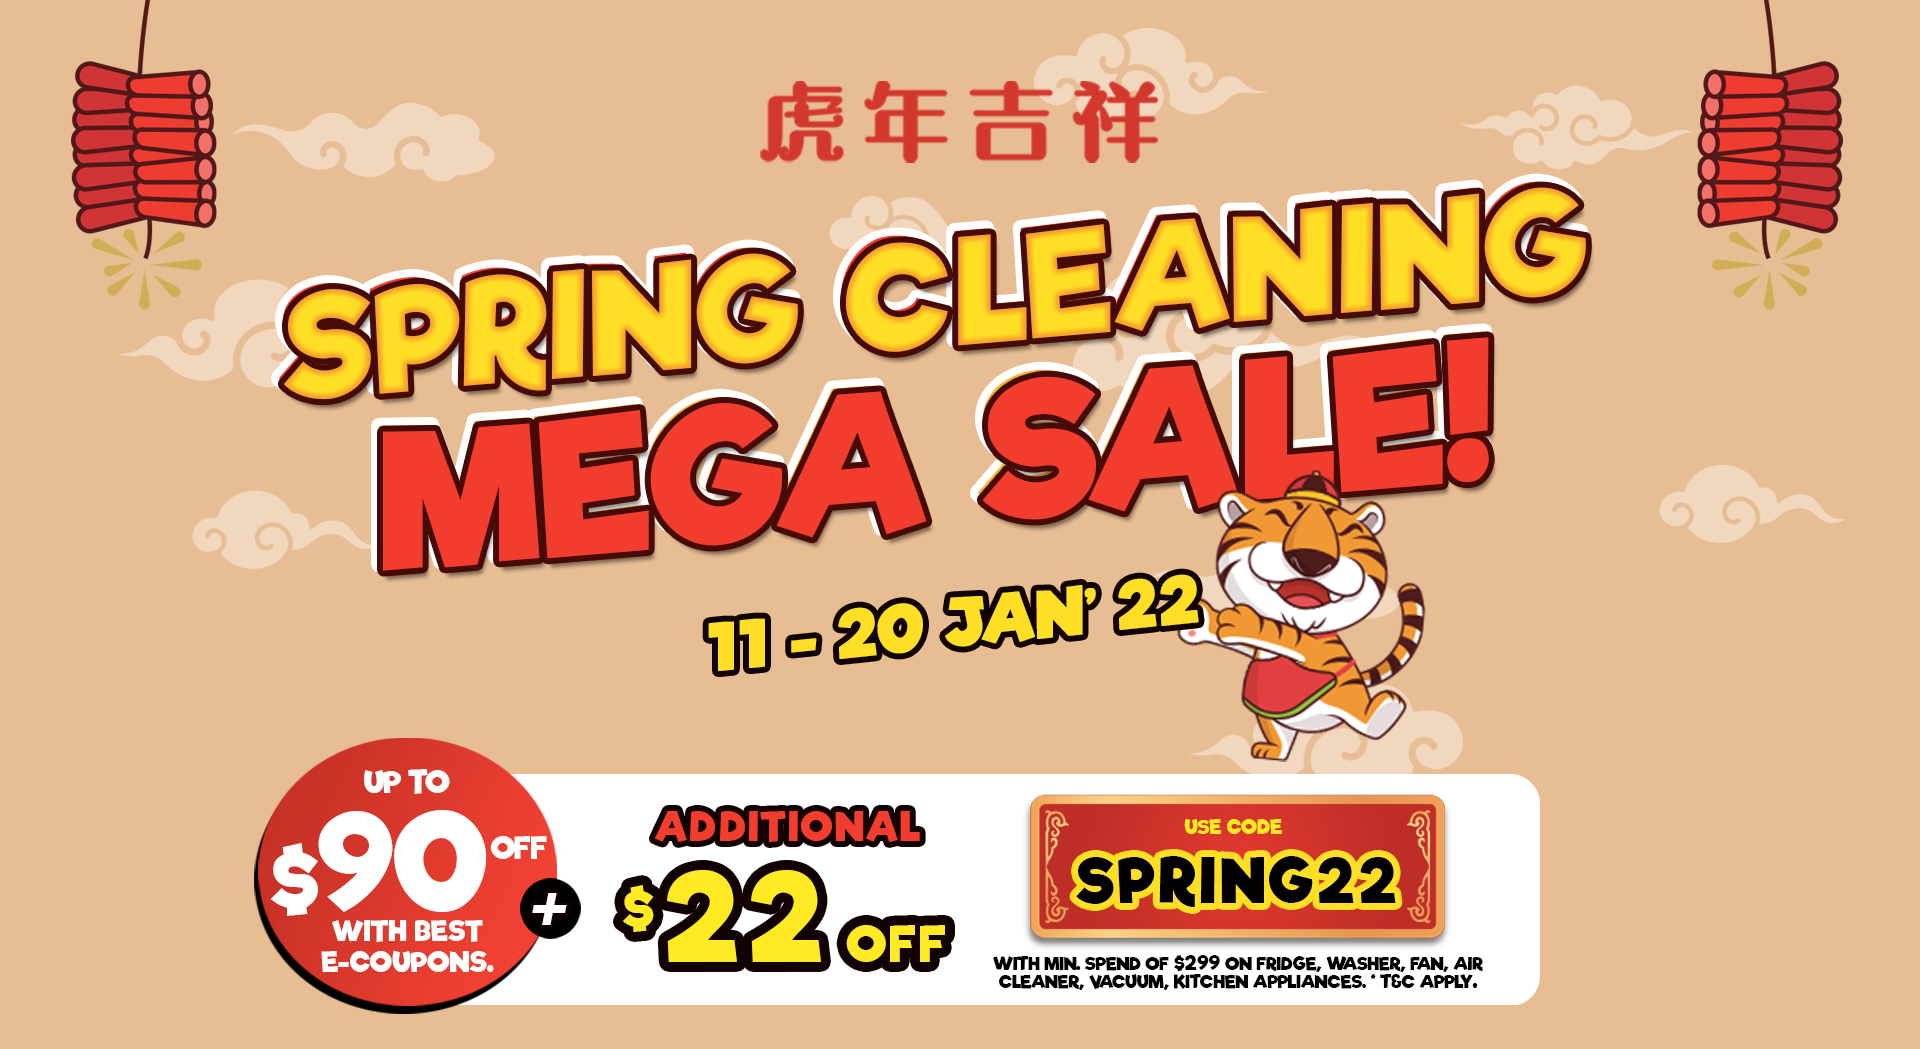 Spring Cleaning Mega Sale!